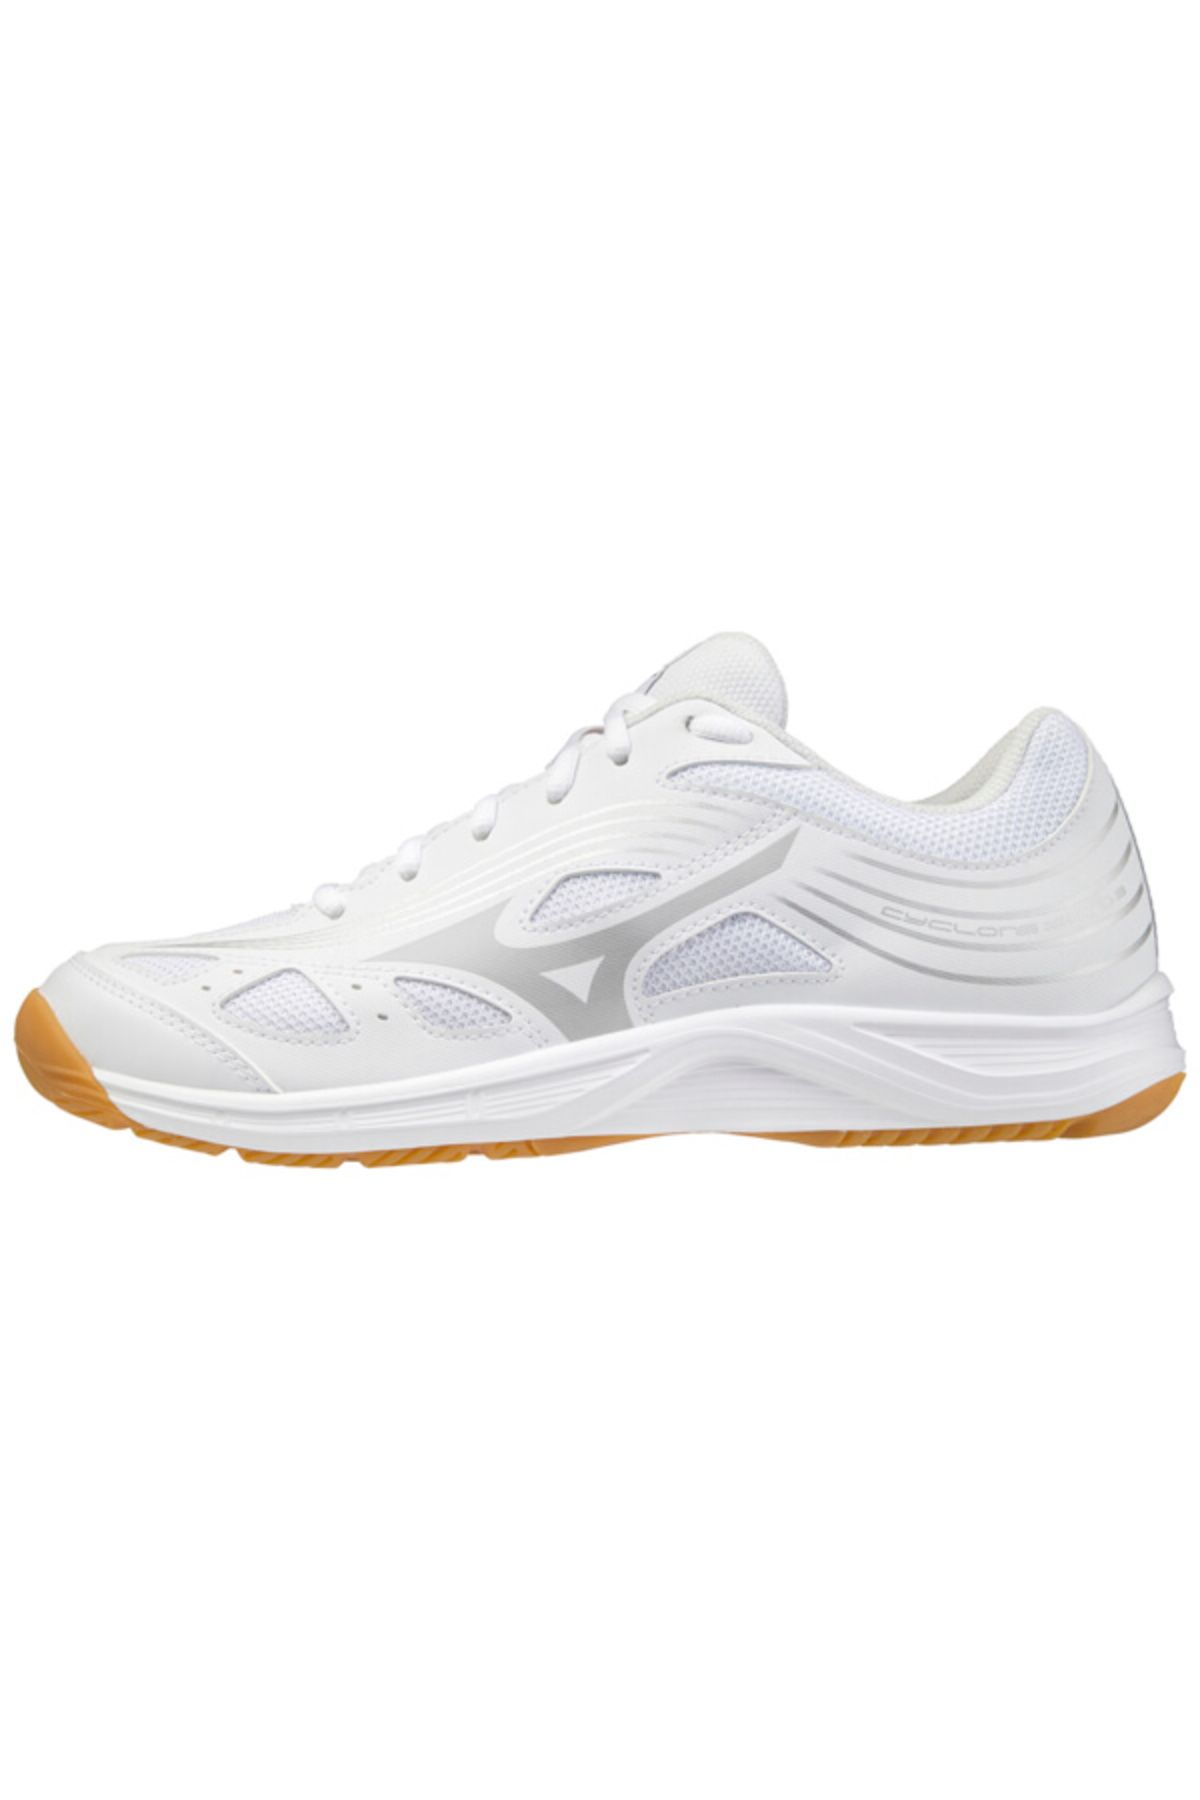 Mizuno Cyclone Speed 3 Erkek Salon Ayakkabısı Beyaz